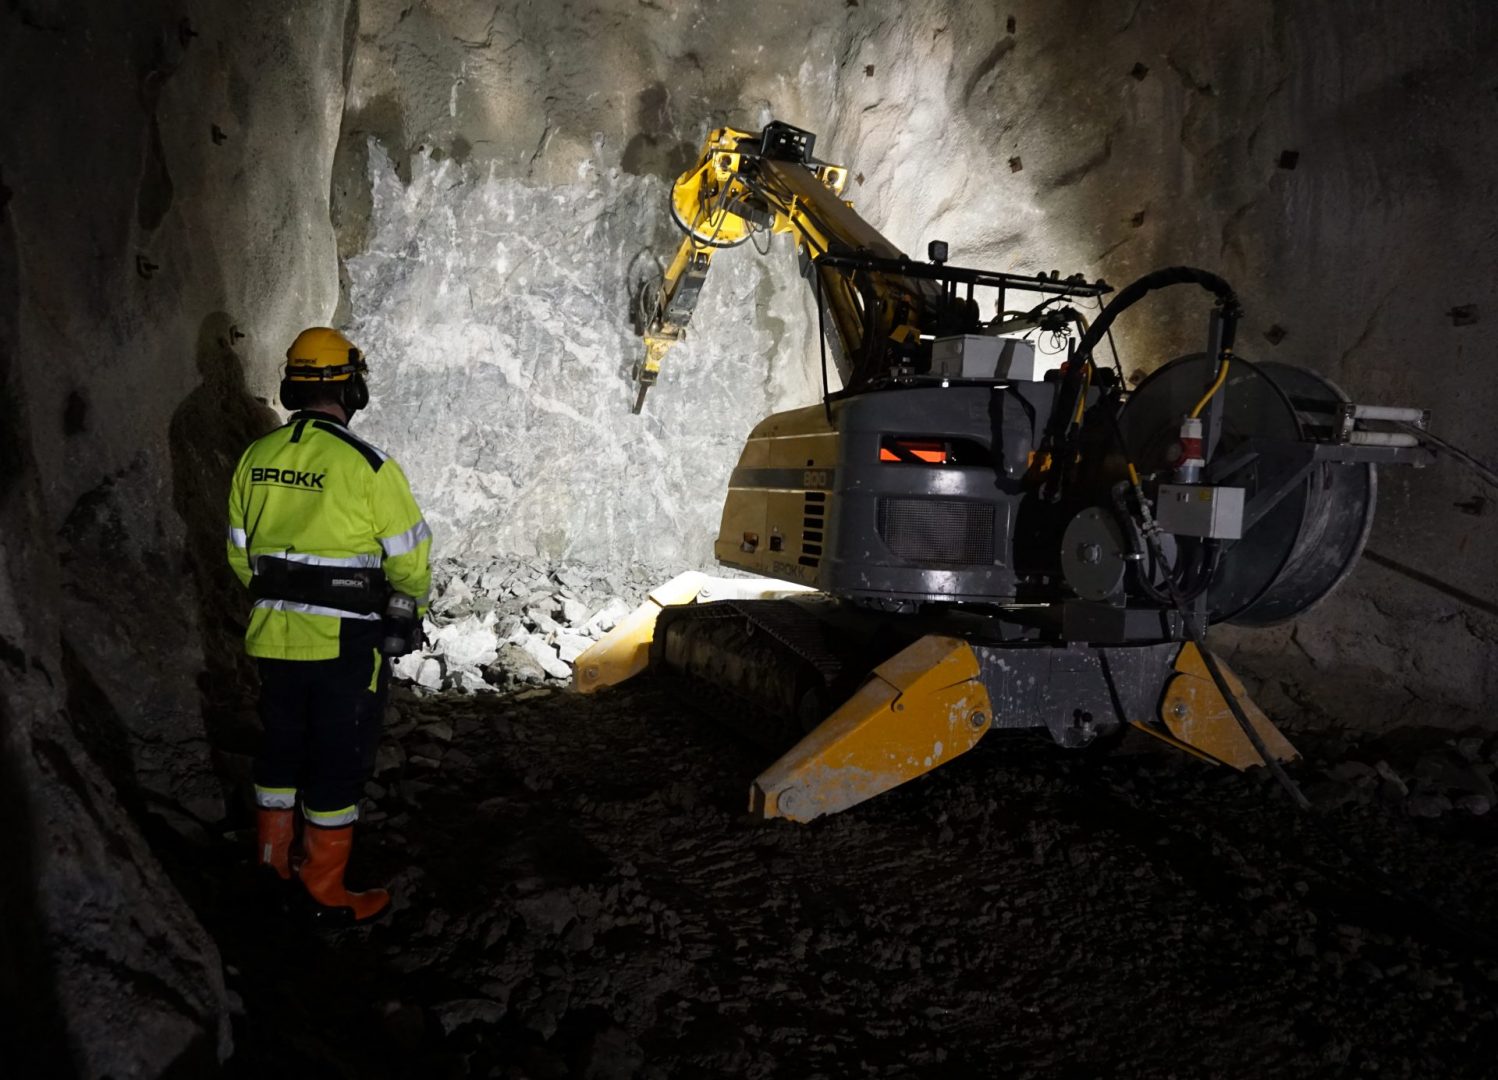 One of Brokk's remote-controlled demolition robot mining underground.